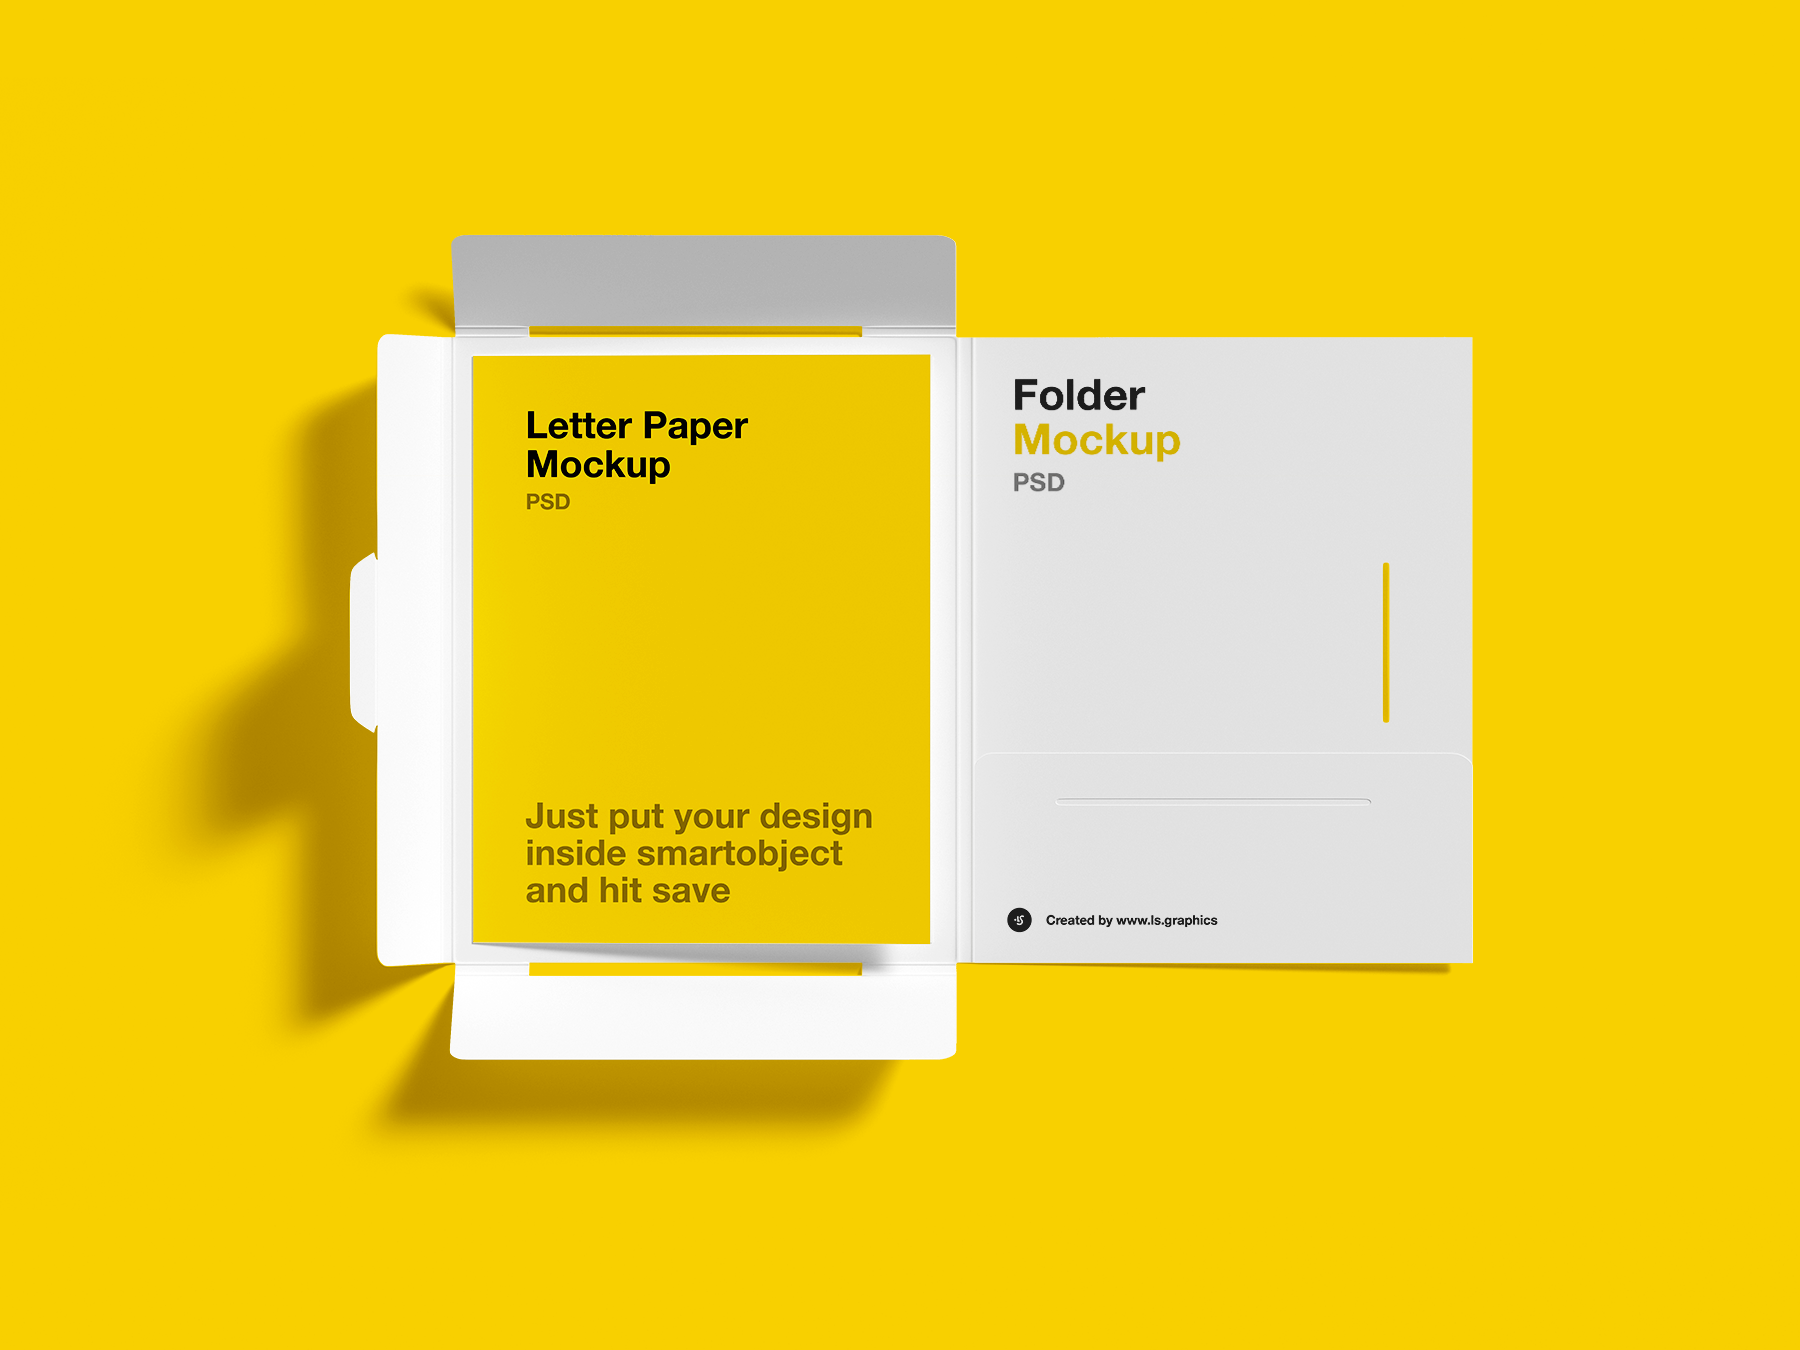 Free Letter and Paper Folder Mockup